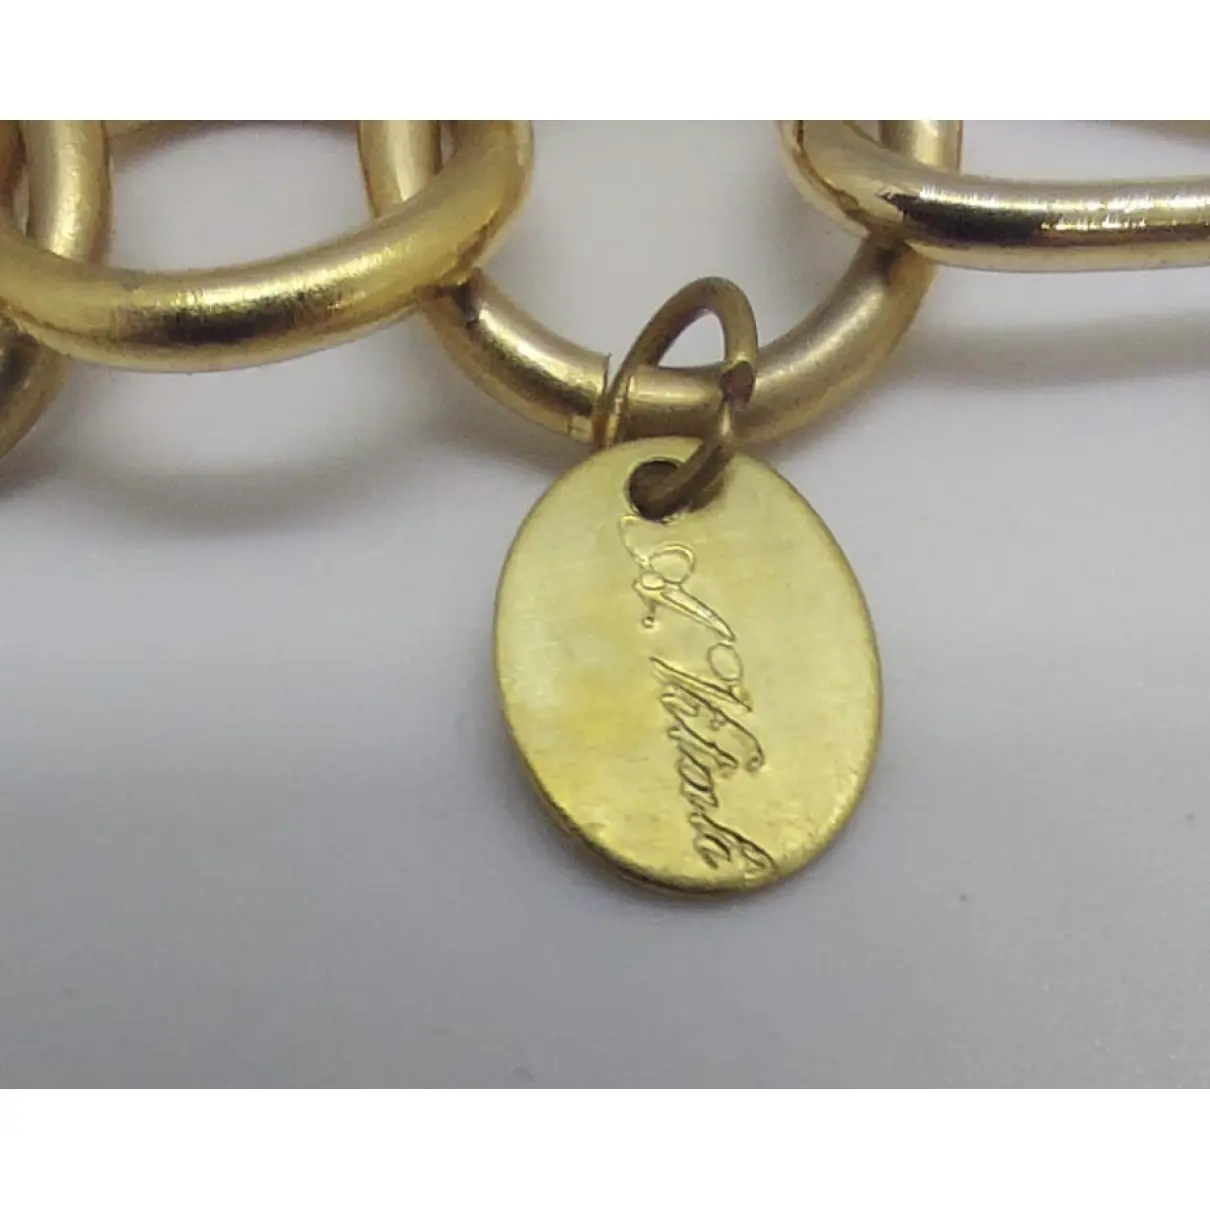 Buy ANNARITA VITALI Necklace online - Vintage